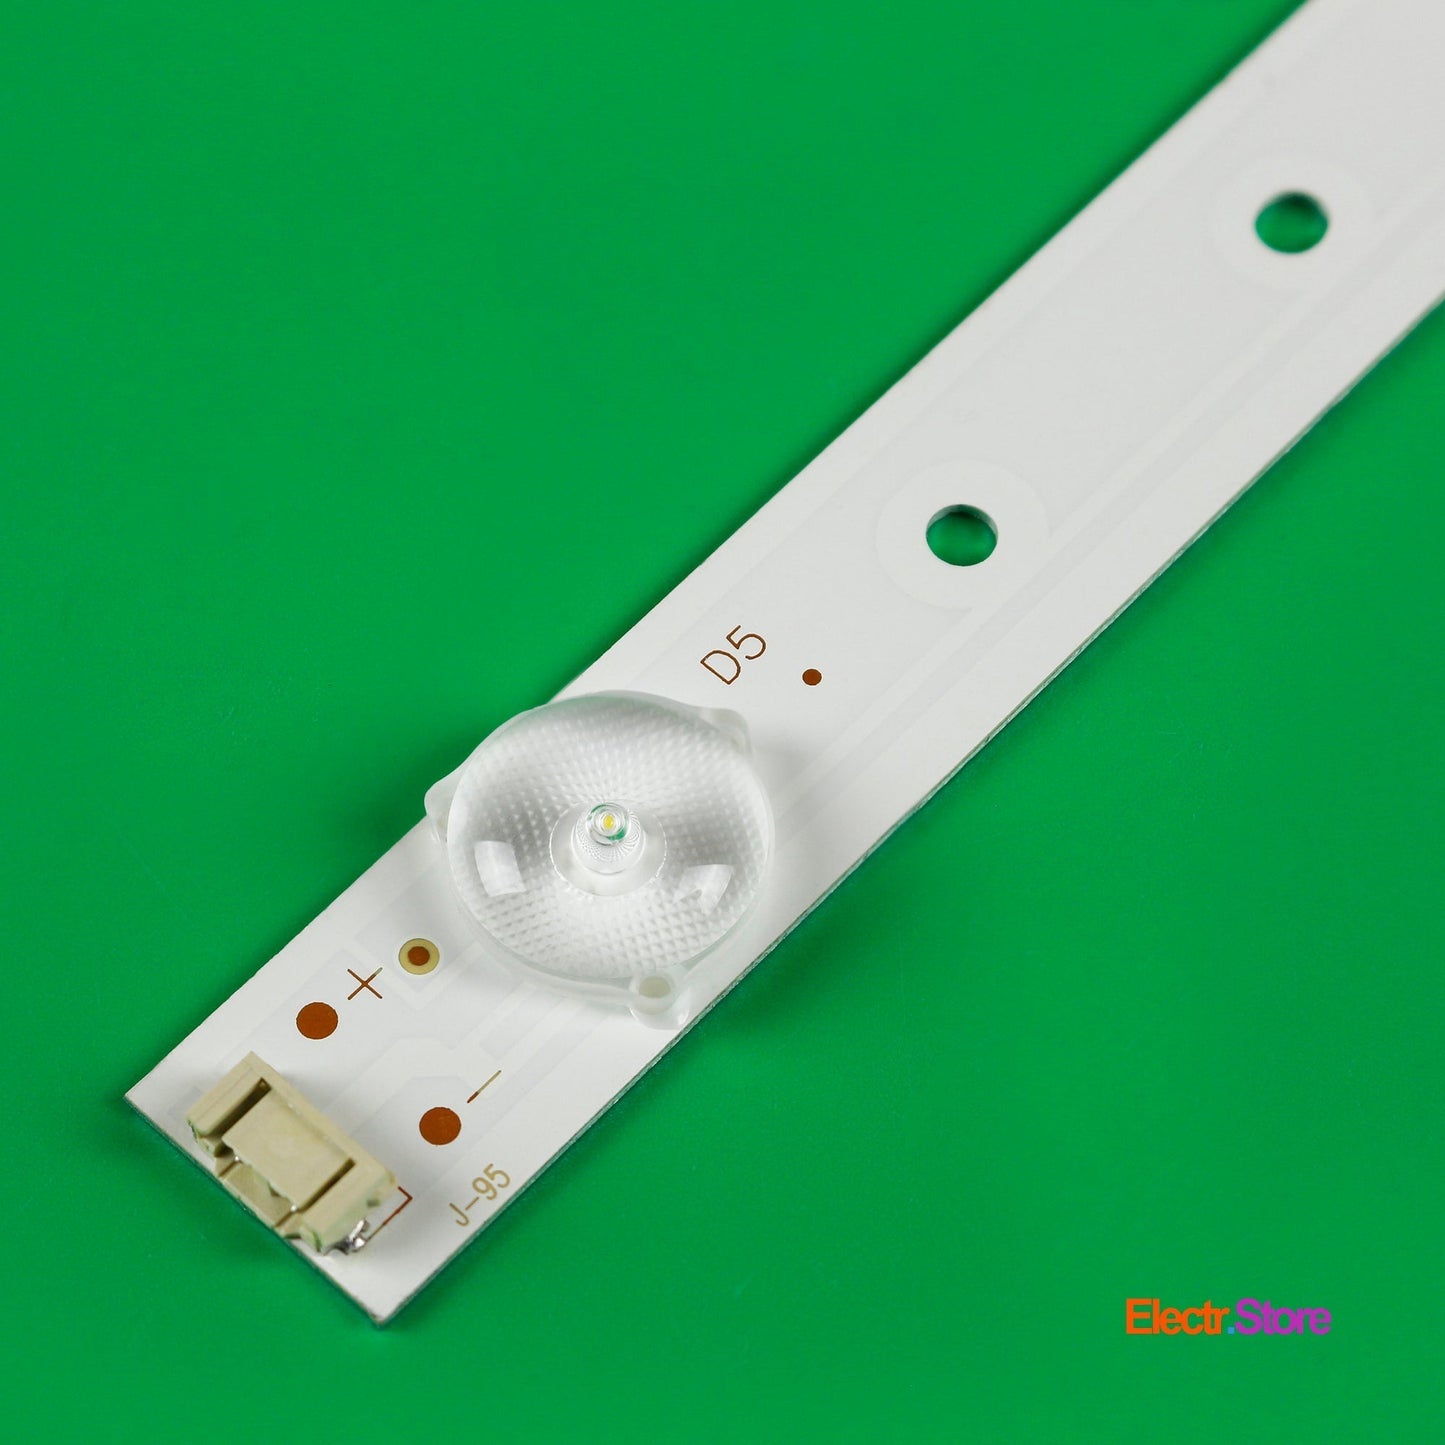 LED Backlight Strip Kits, 5800-W43001-3P00, 5800-W43001-5P00 (8 pcs/kit), for TV 42", 43" Erisson: 43LES70T2 42"43" 5800-W43001-3P00 Erisson LED Backlights Polaroid Skyworth Electr.Store